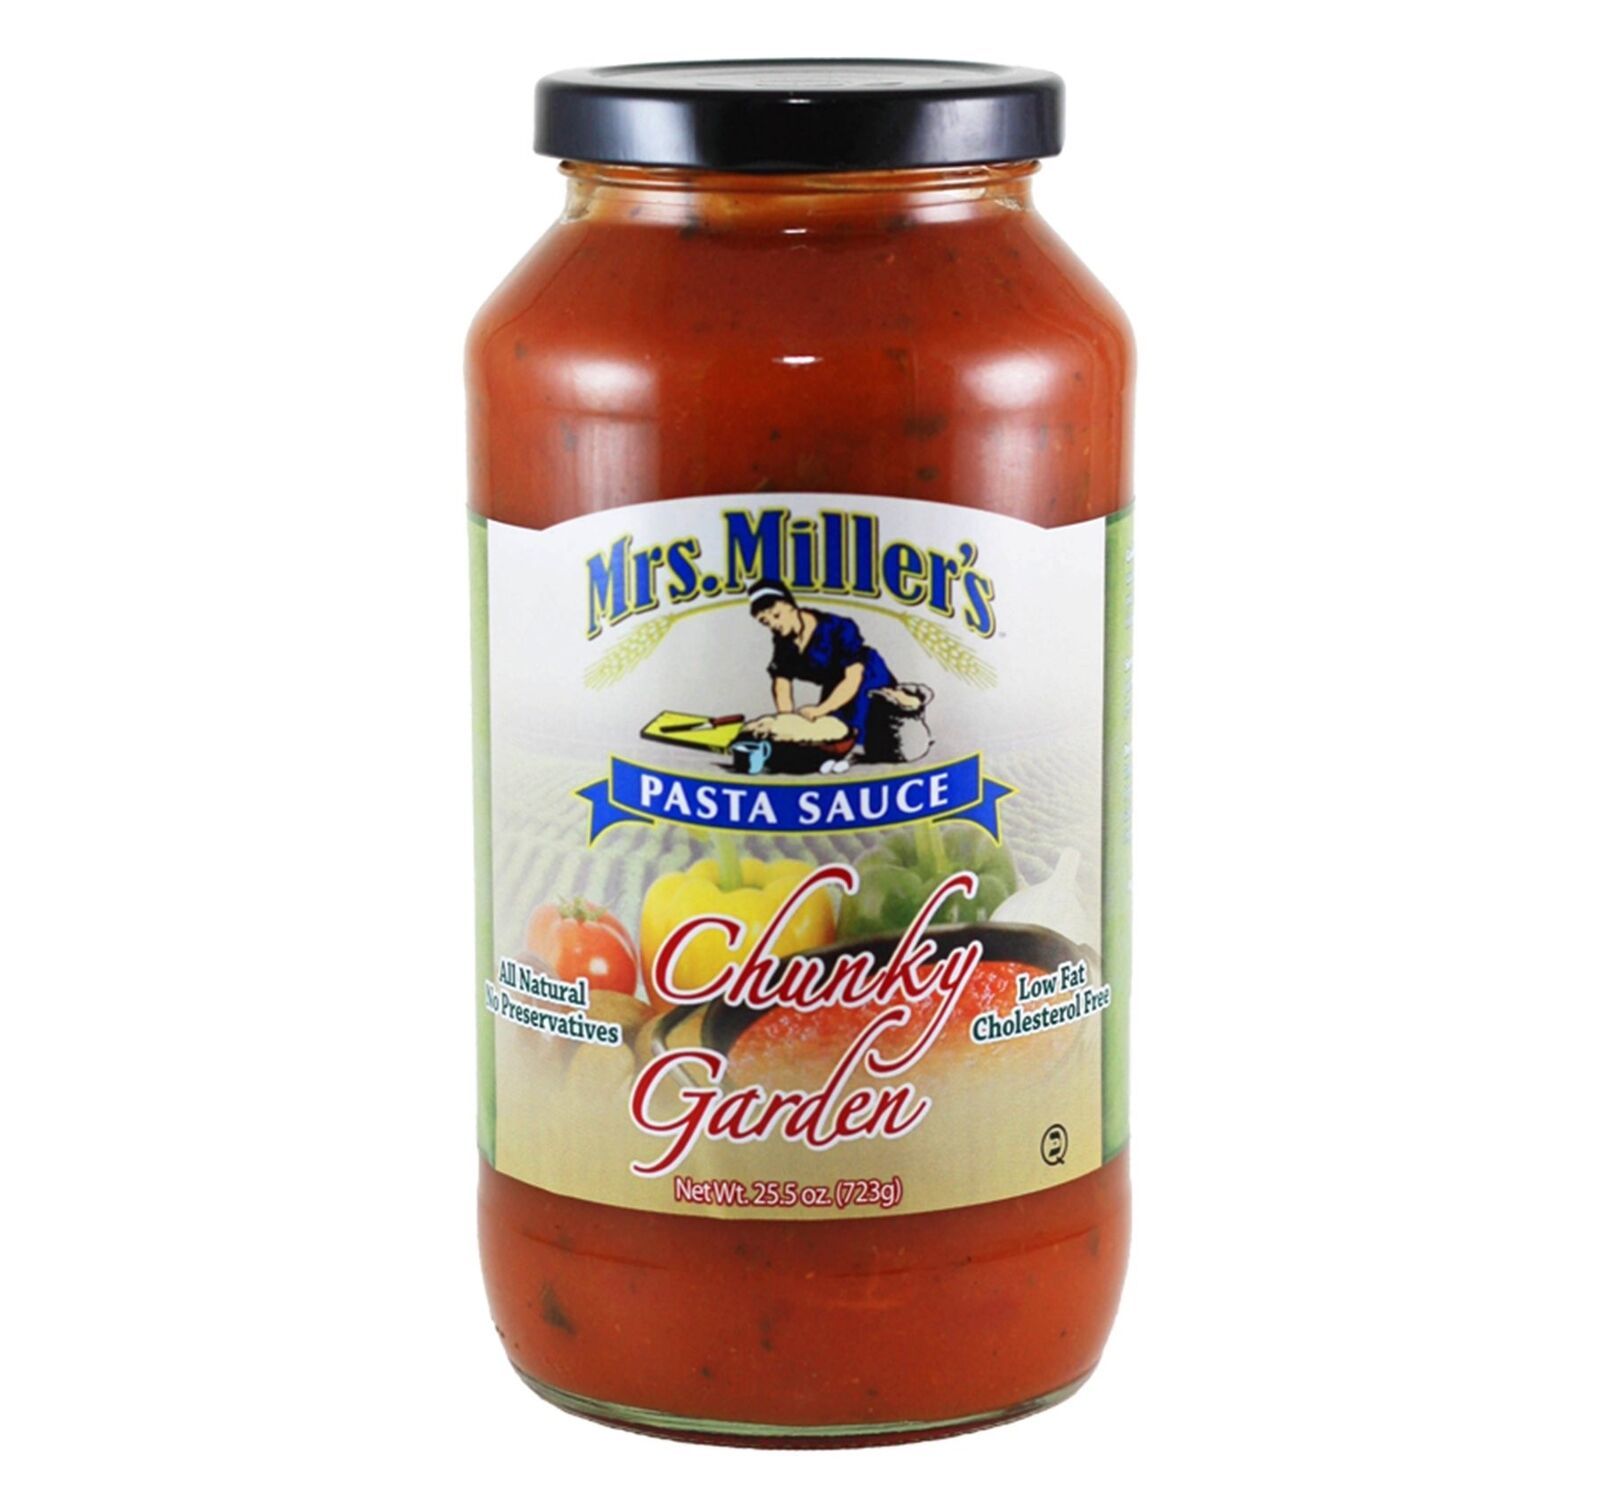 Mrs. Miller's Chunky Garden Pasta Sauce, 3-Pack 25.5 oz. Jars - $33.61